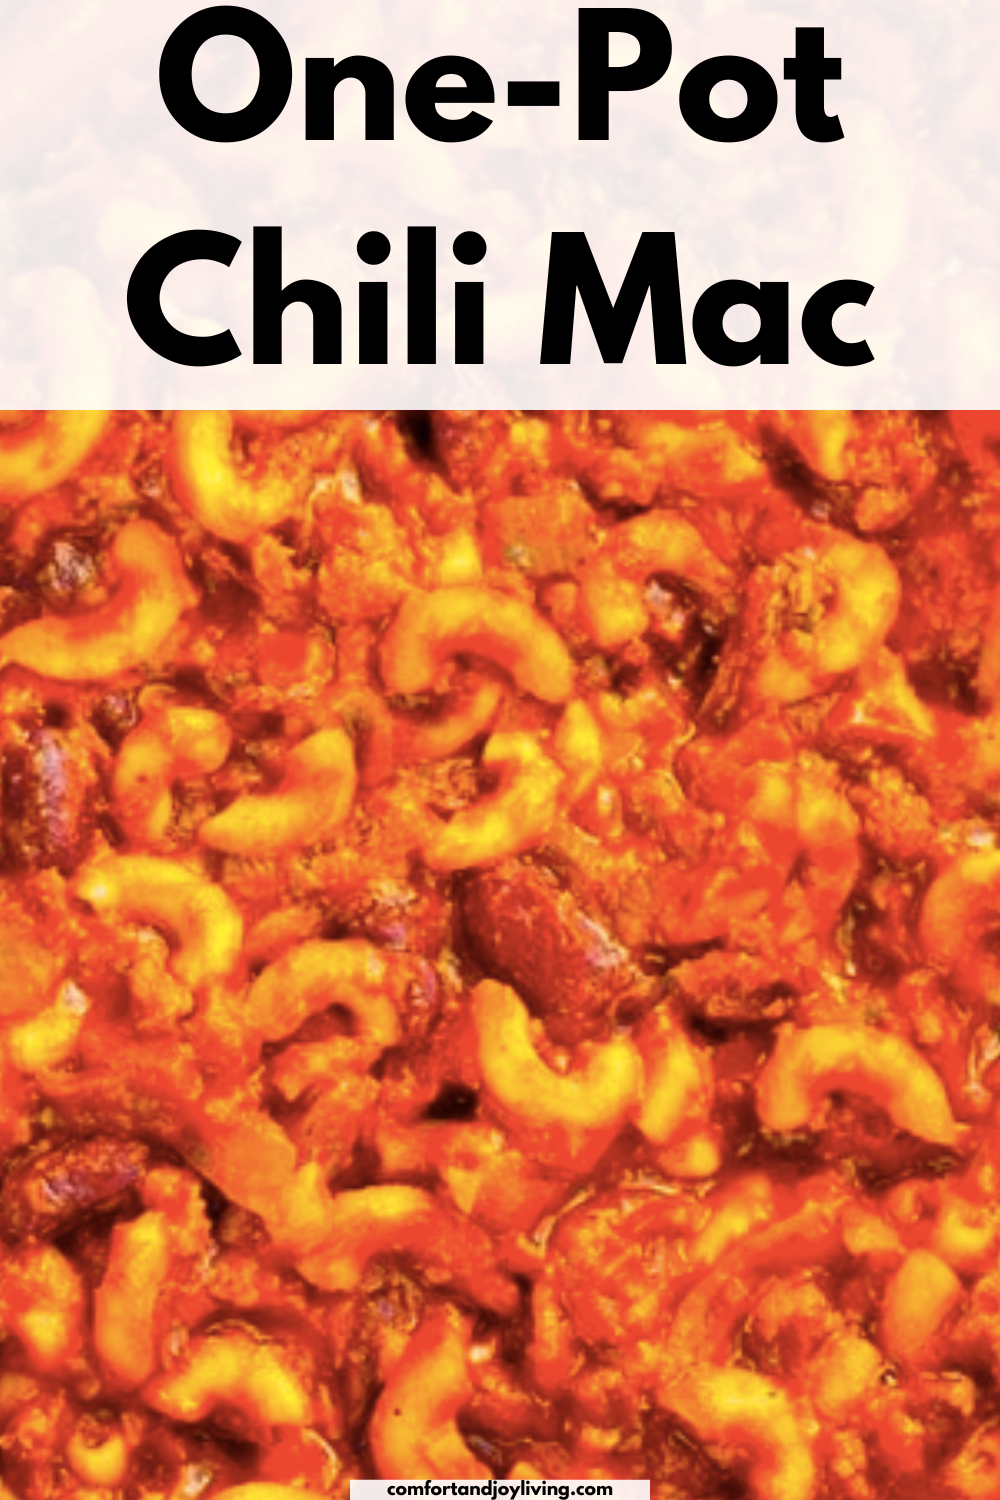 One-Pot Chili Mac